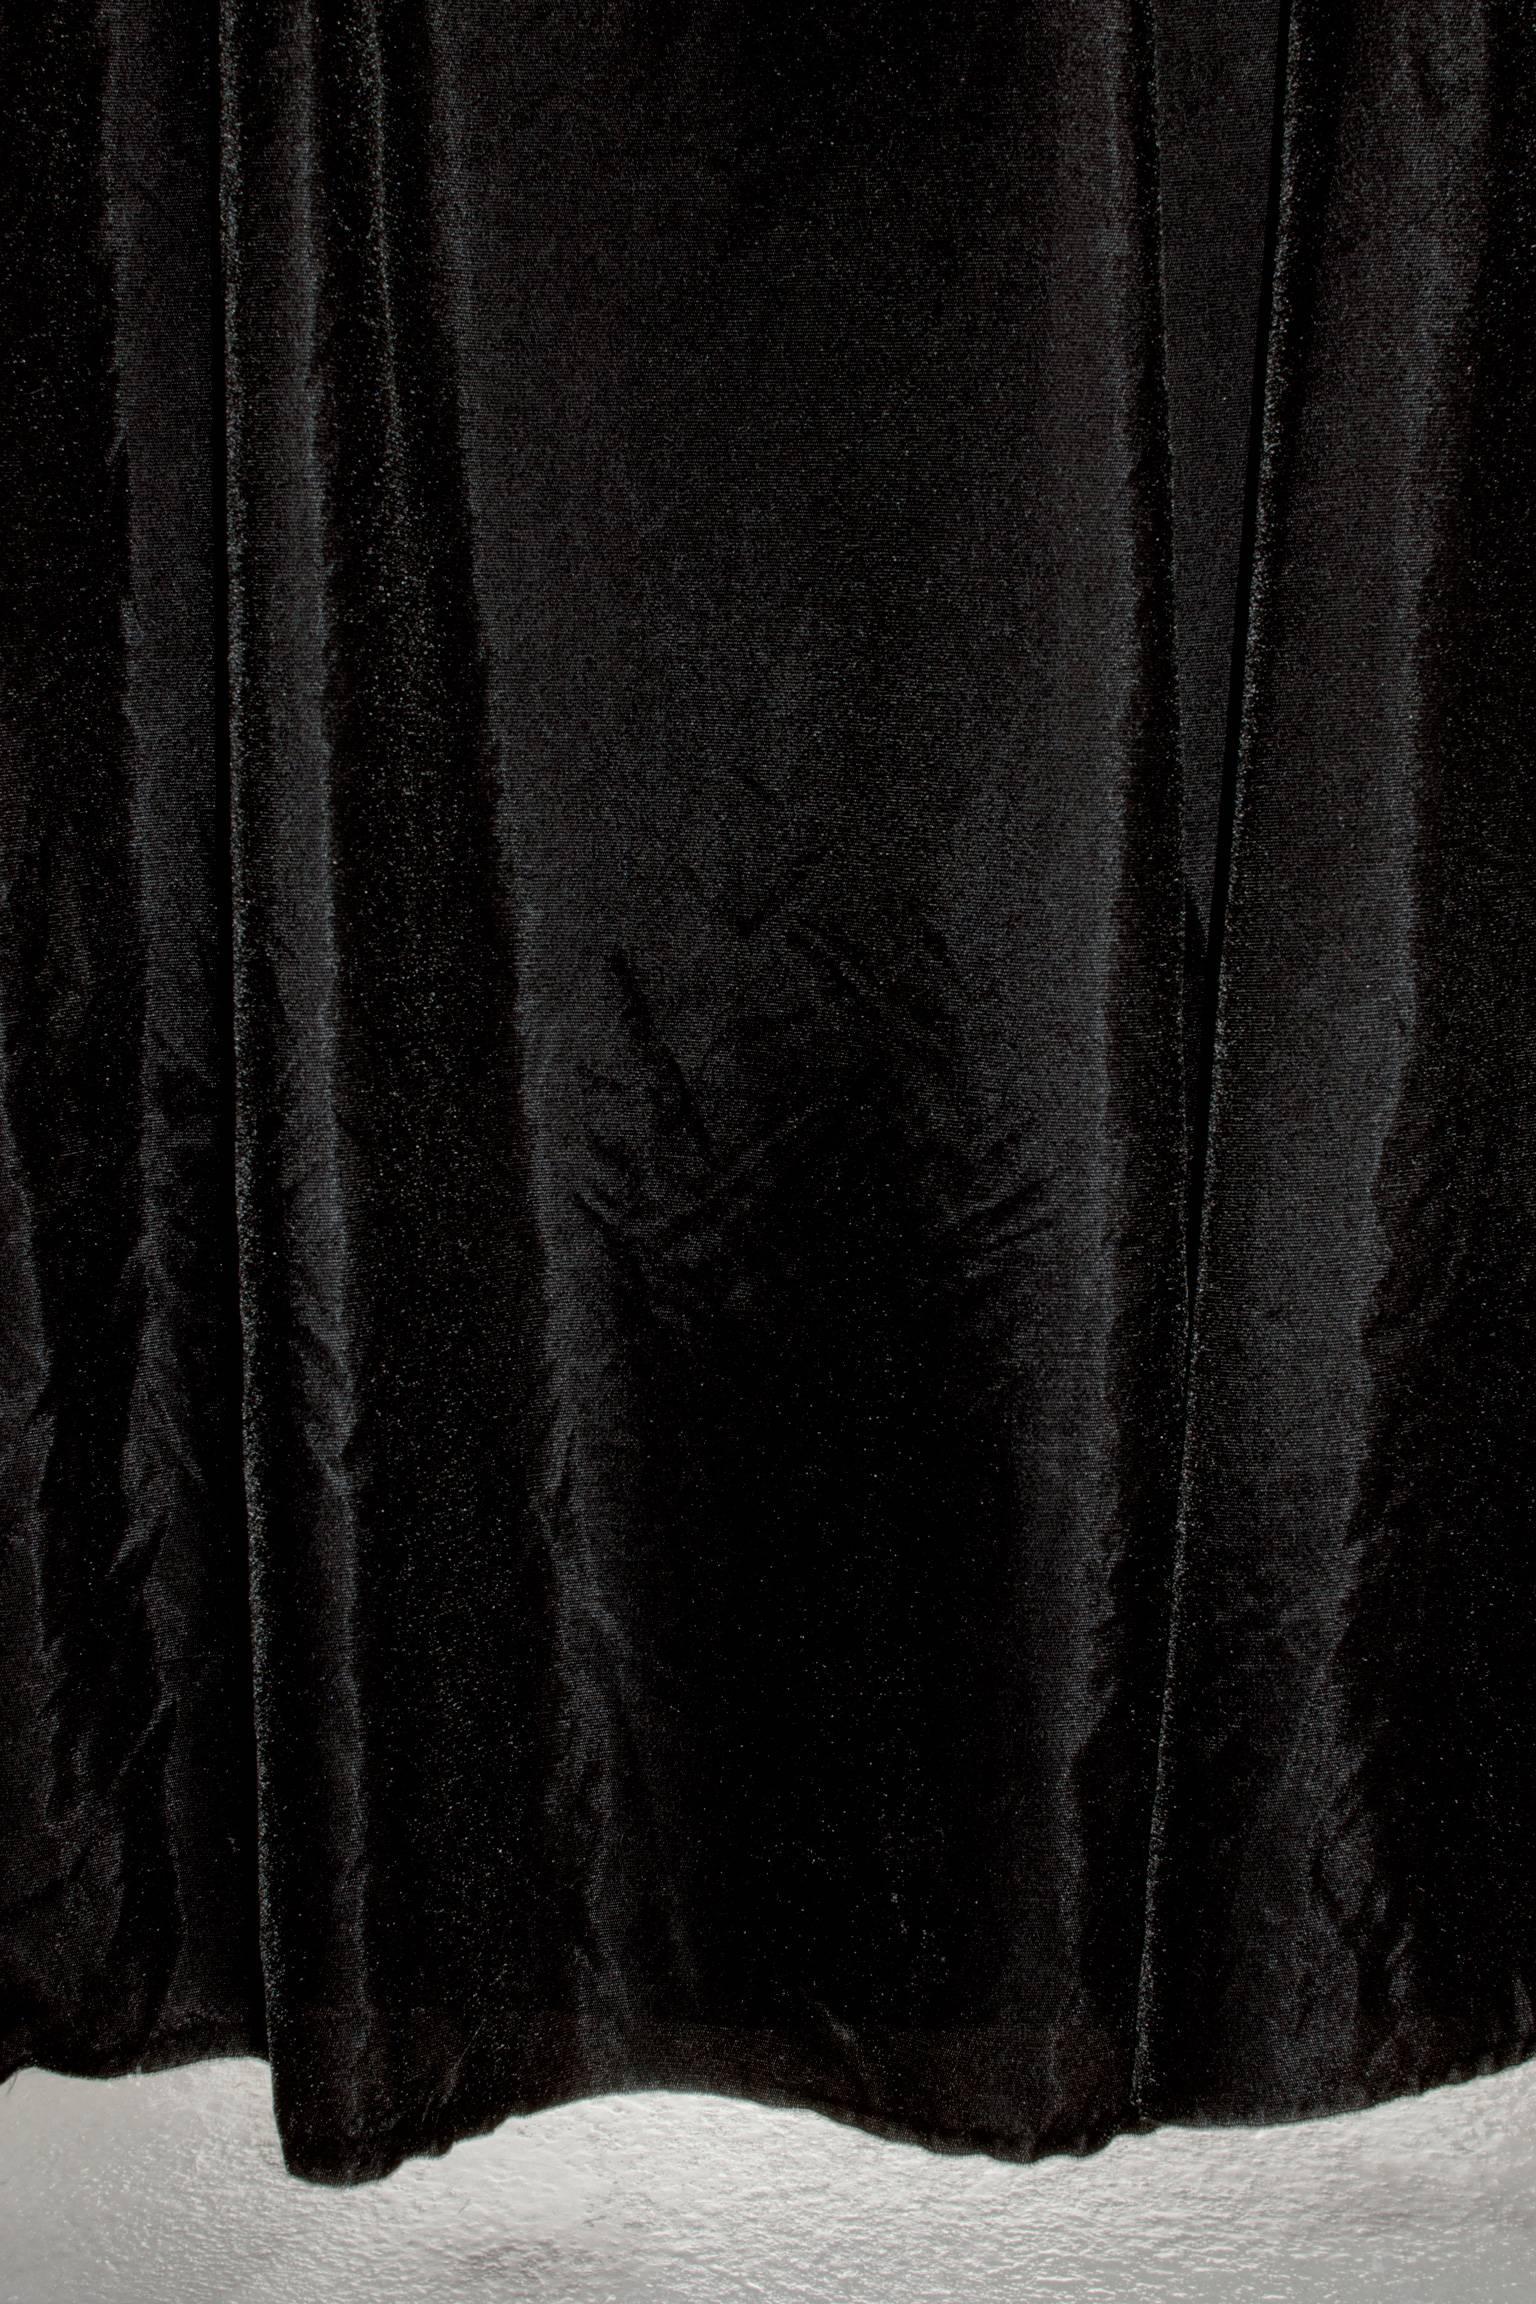 Jakub Dolejš Still-Life Photograph - Black Curtain